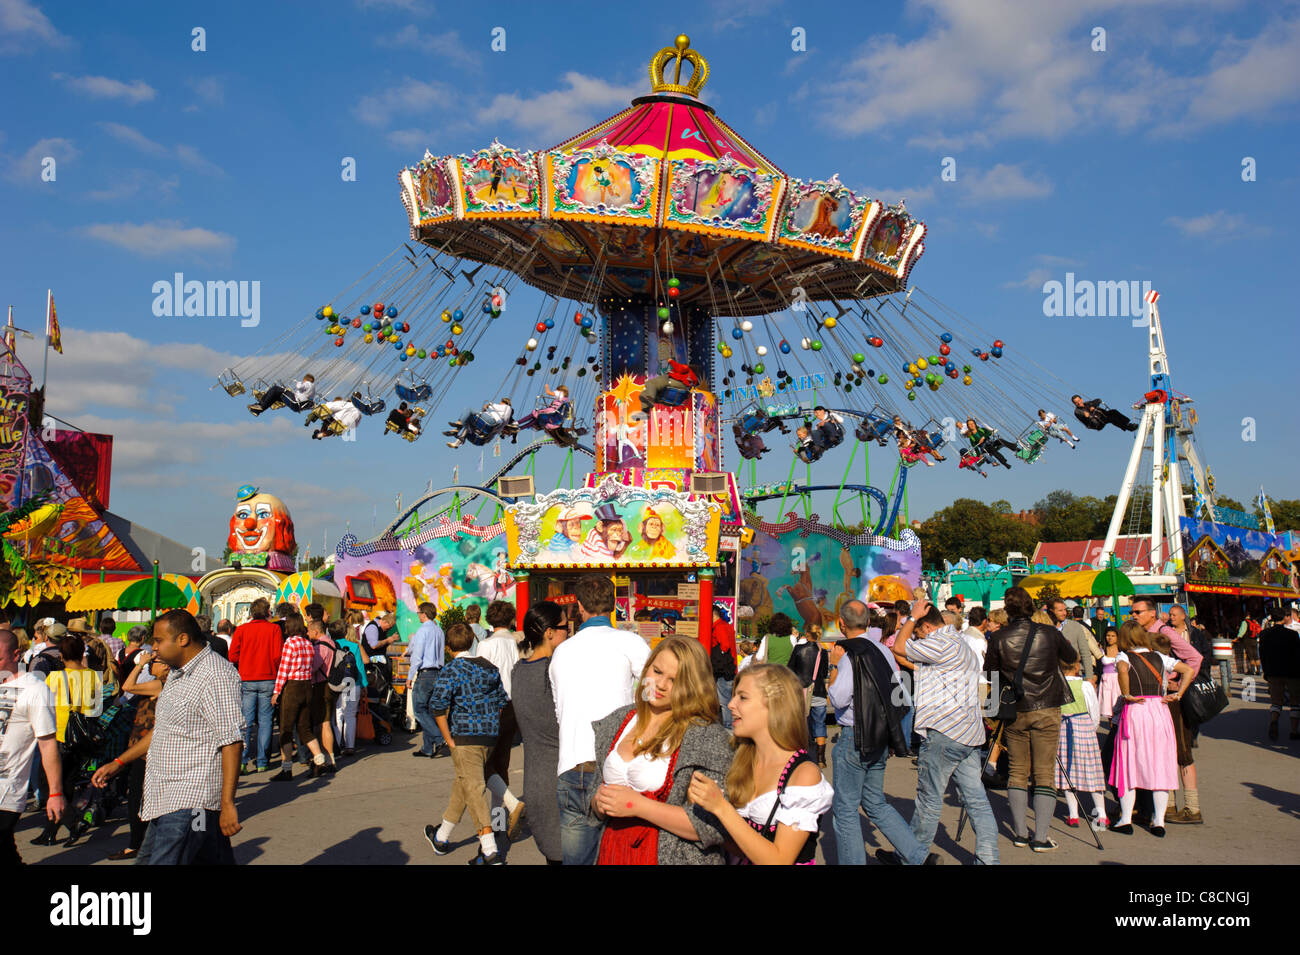 Famosa Oktoberfest en Munich, Alemania, con carrusel Foto de stock